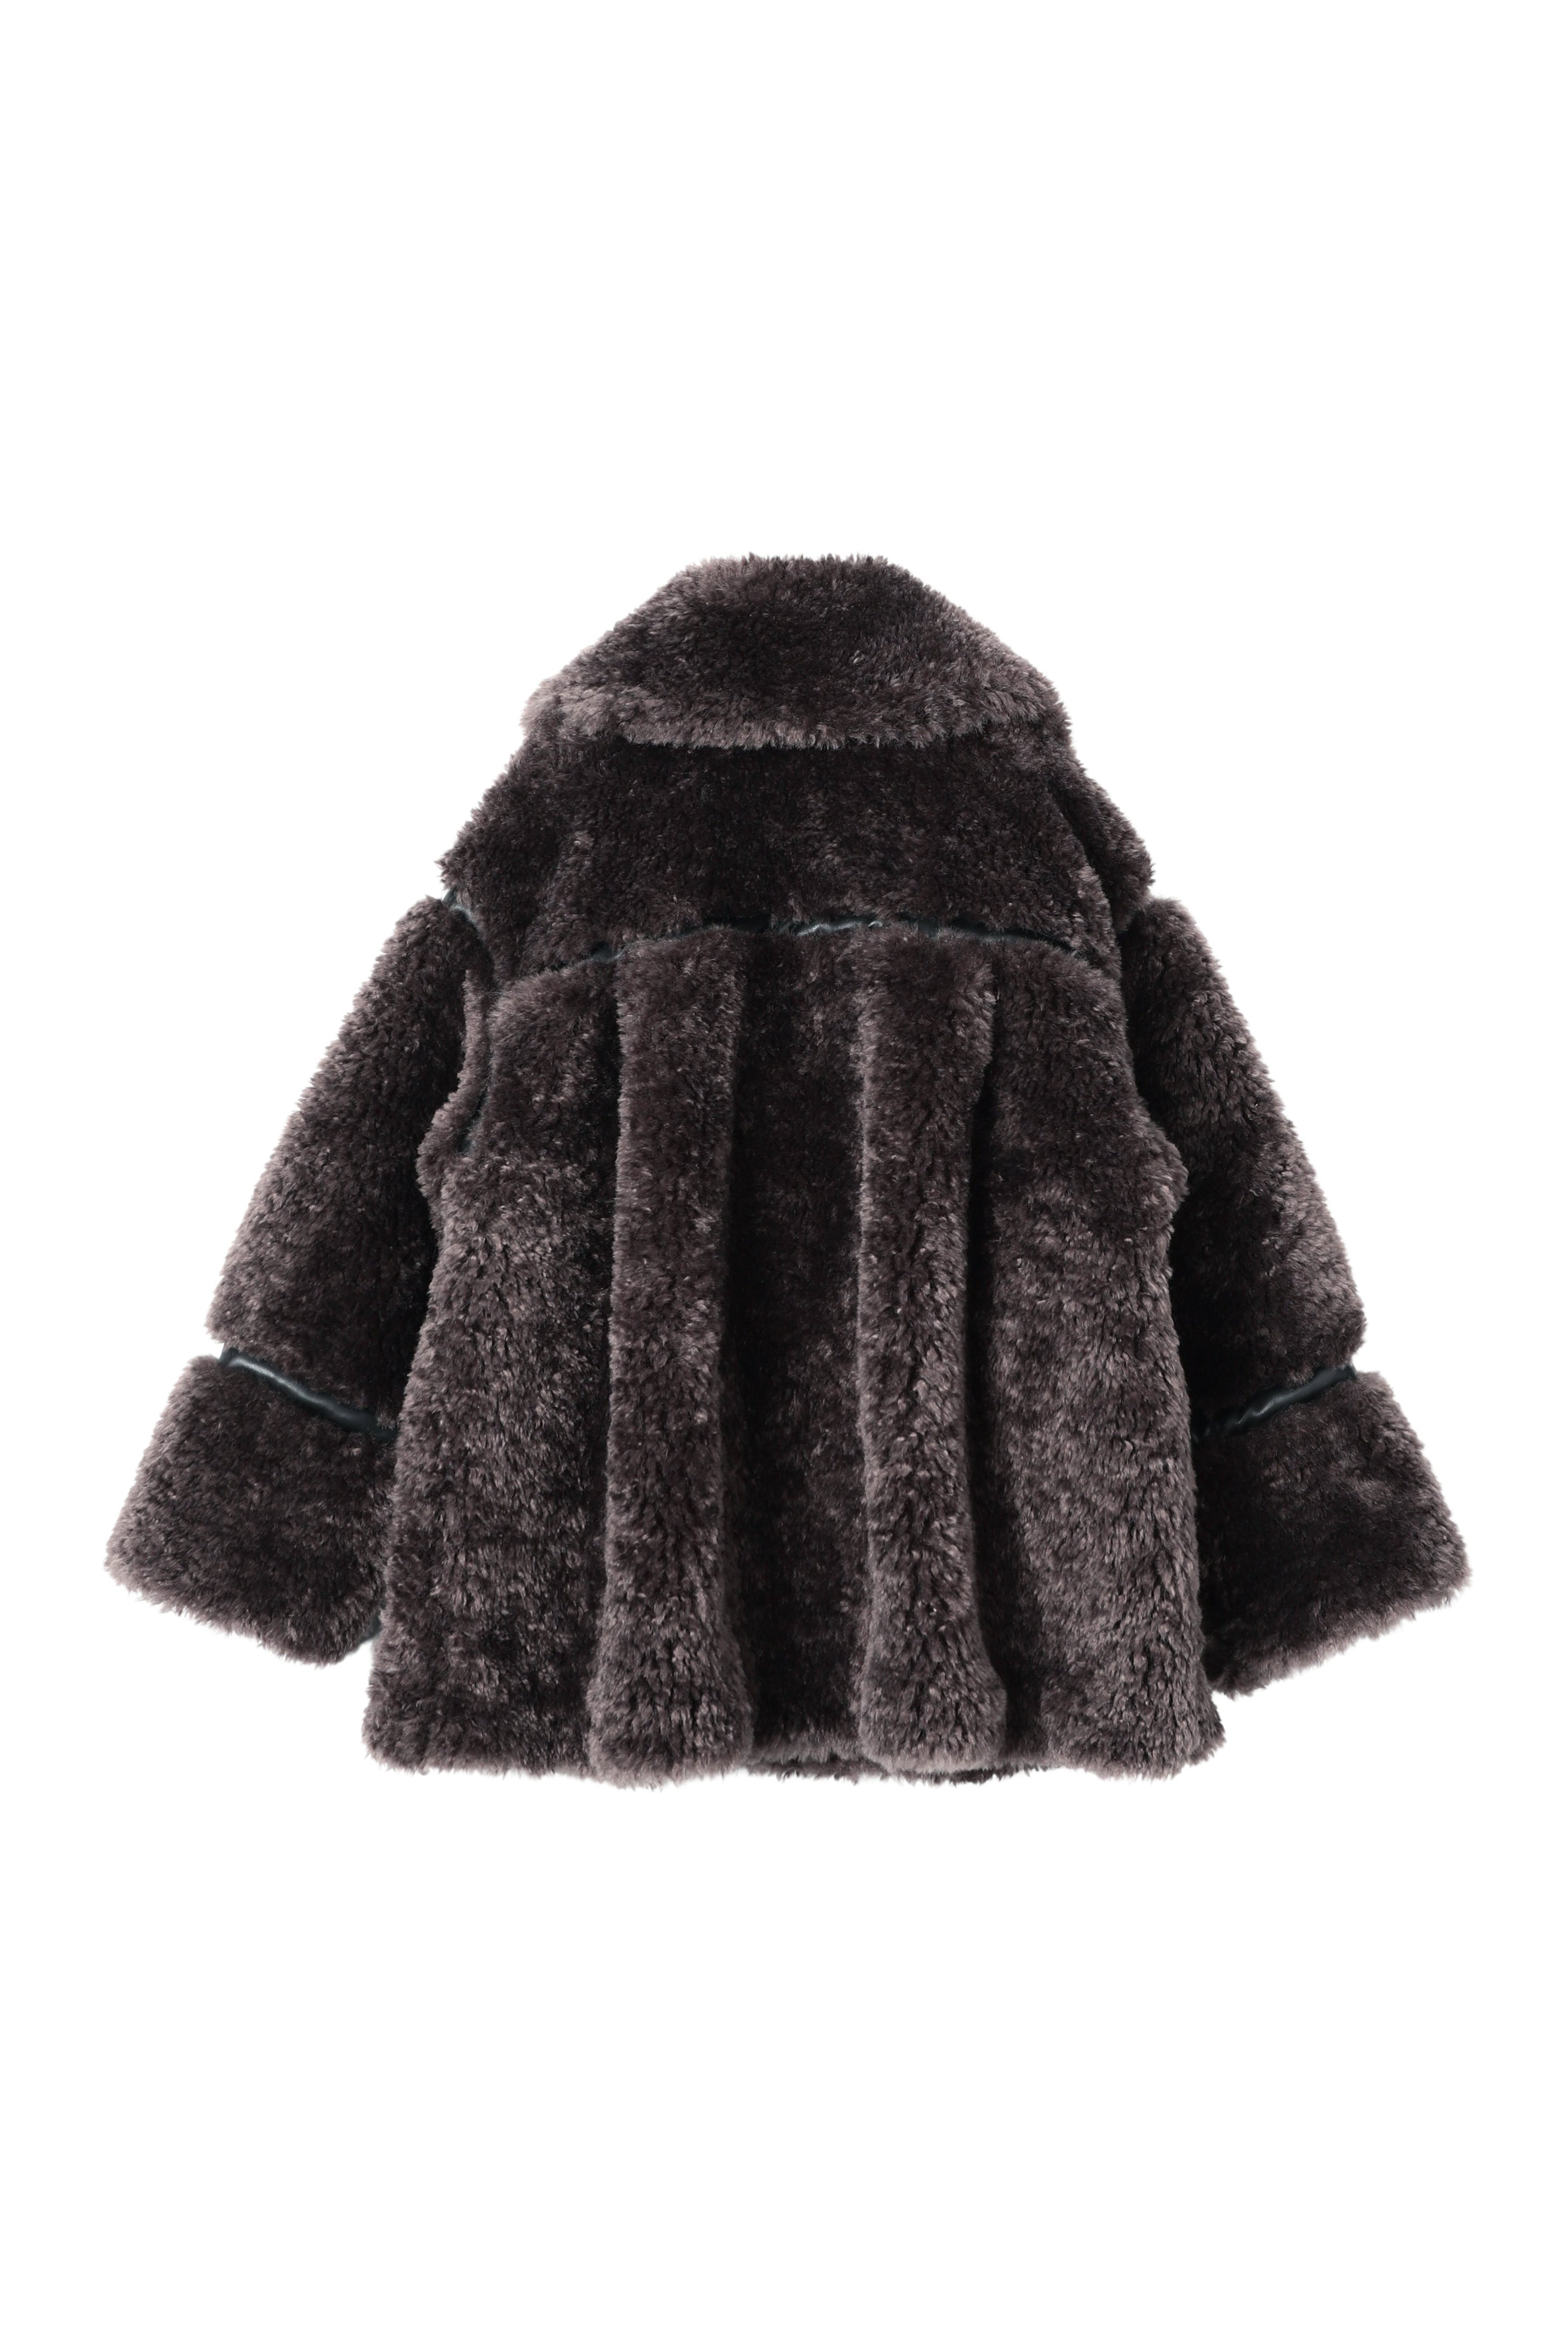 最終価格????france vintage eco fur coat.レディース